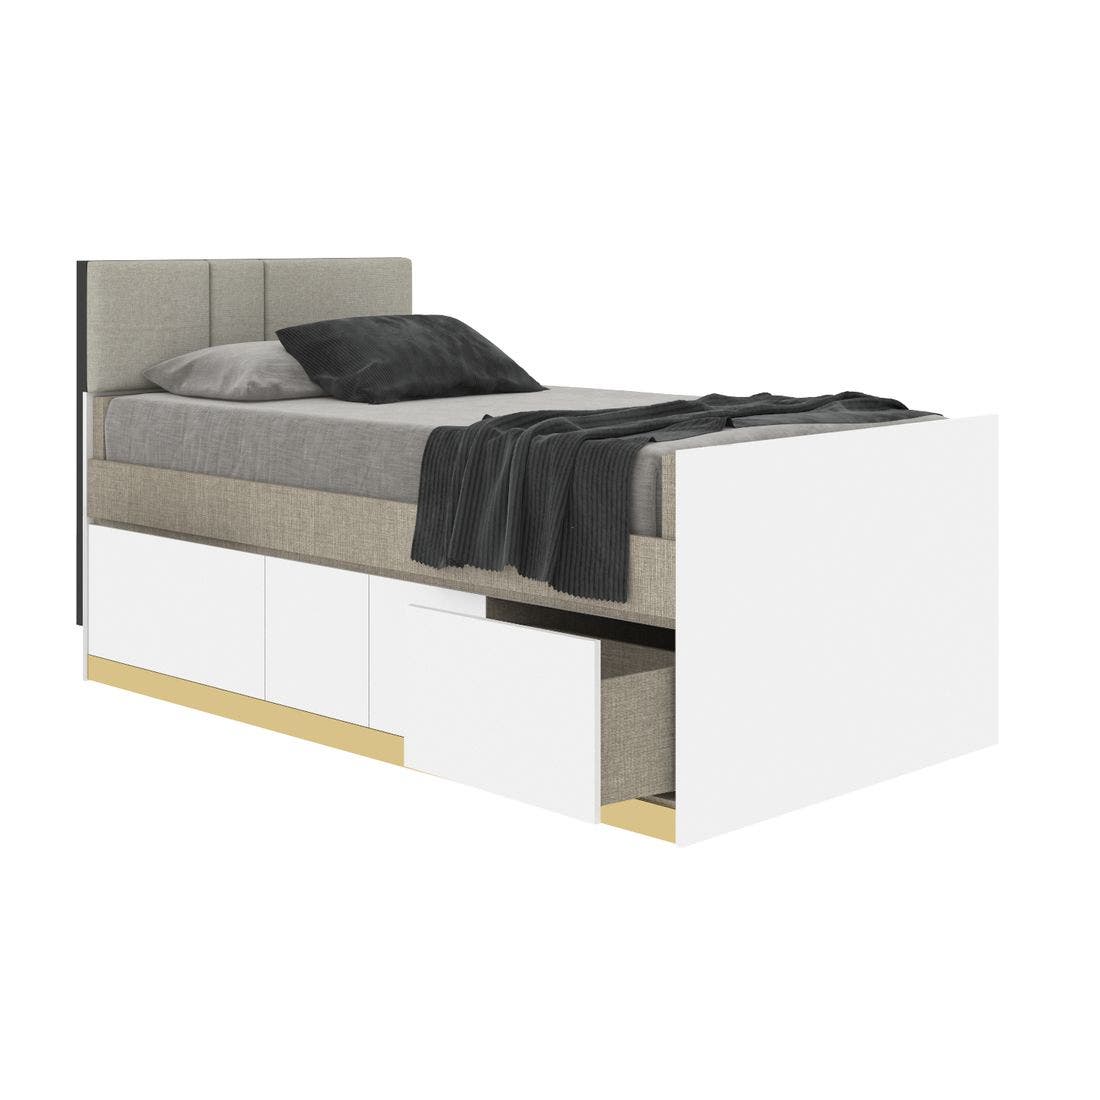 19203945-blisz-furniture-bedroom-furniture-beds-06